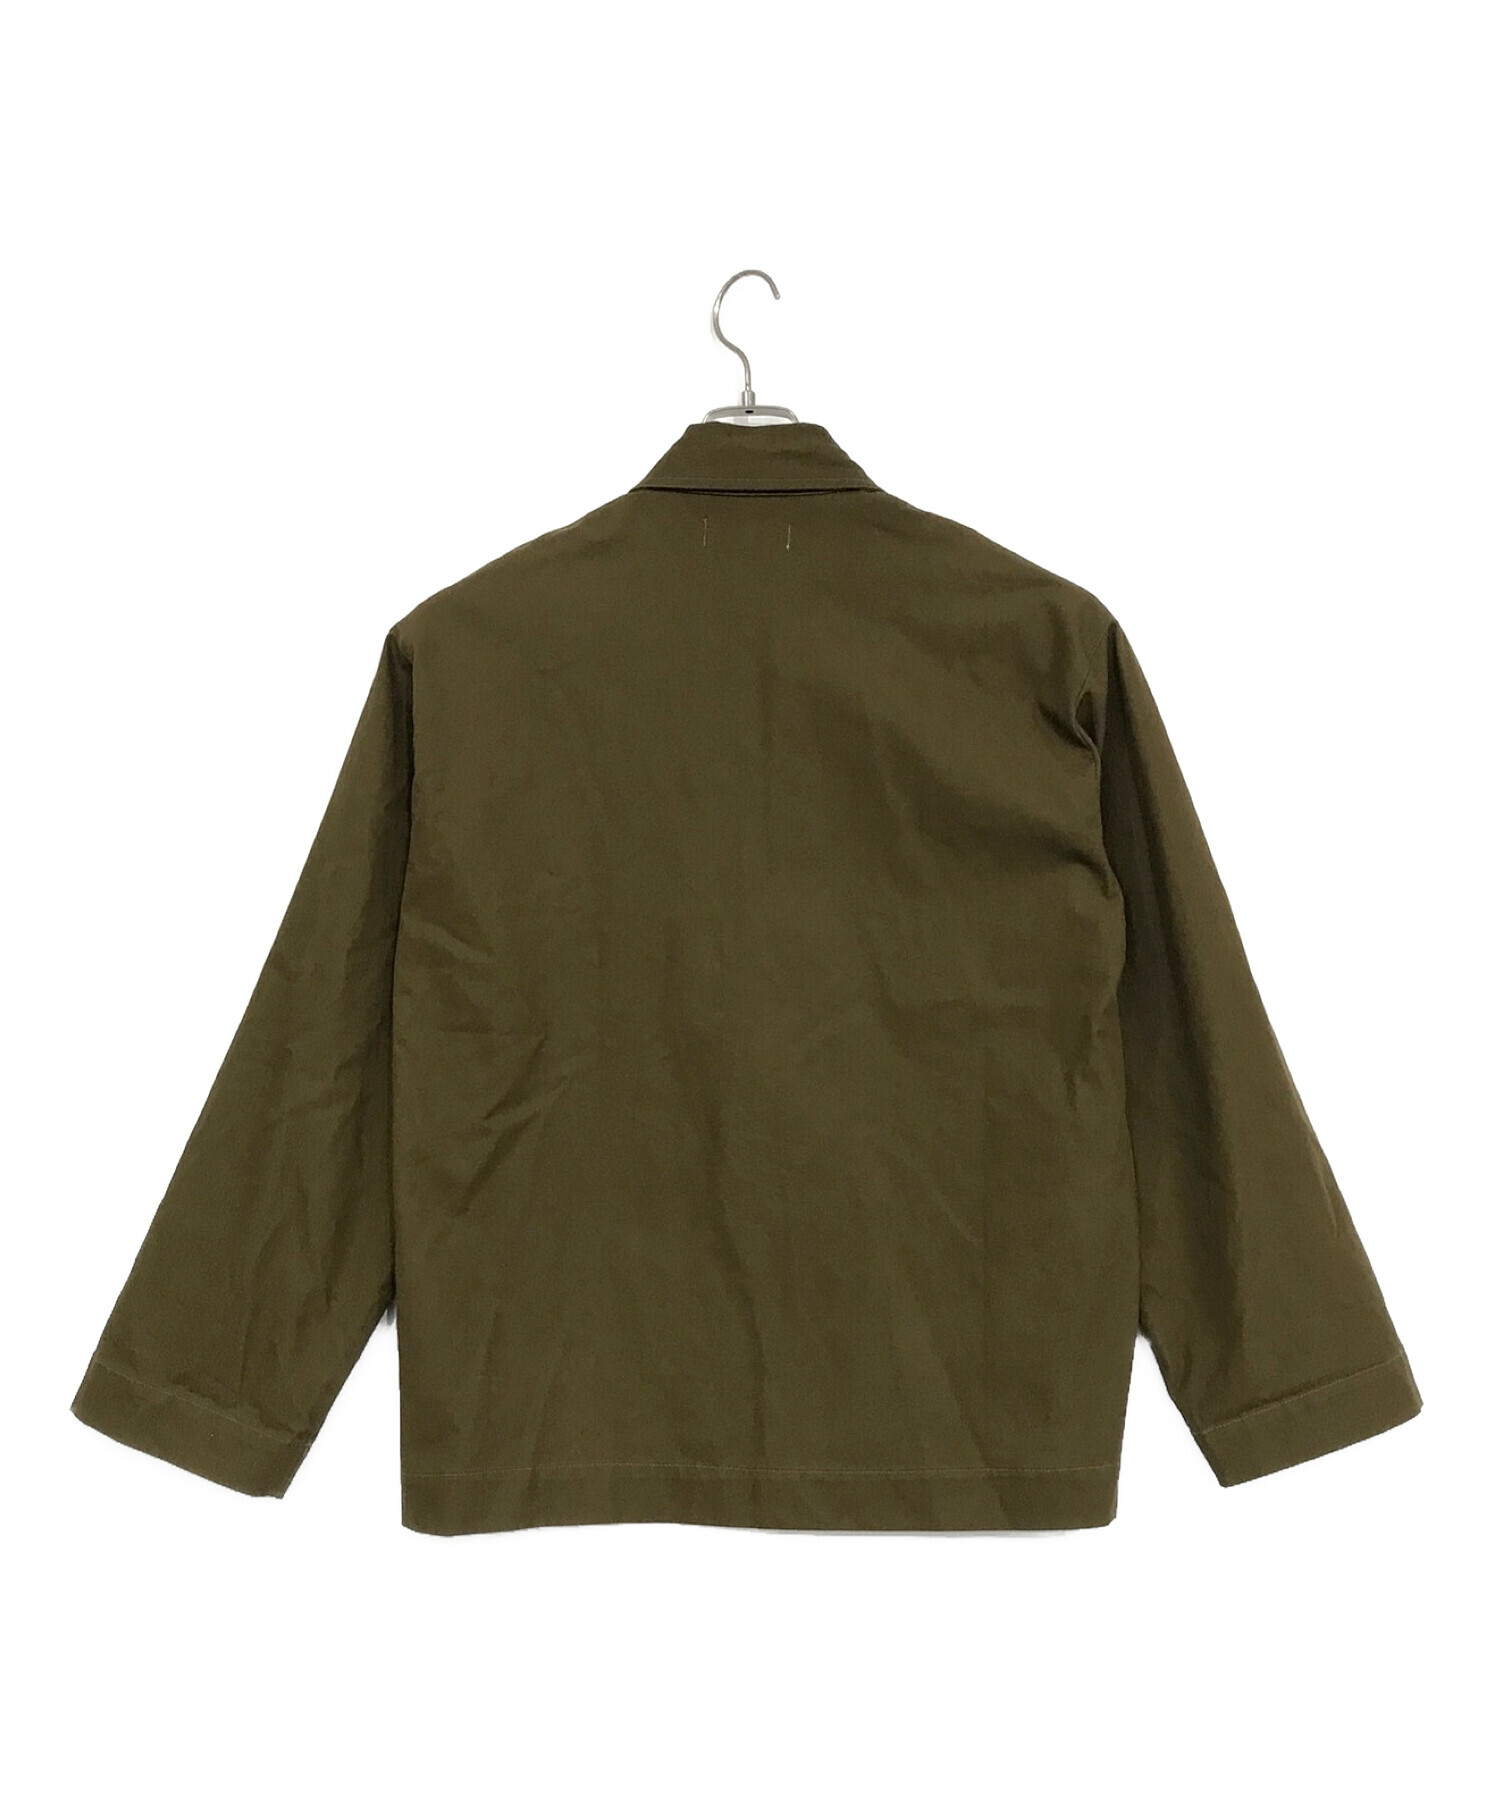 MARKA (マーカ) ユーティリティシャツジャケット ブラウン サイズ:SIZE 1